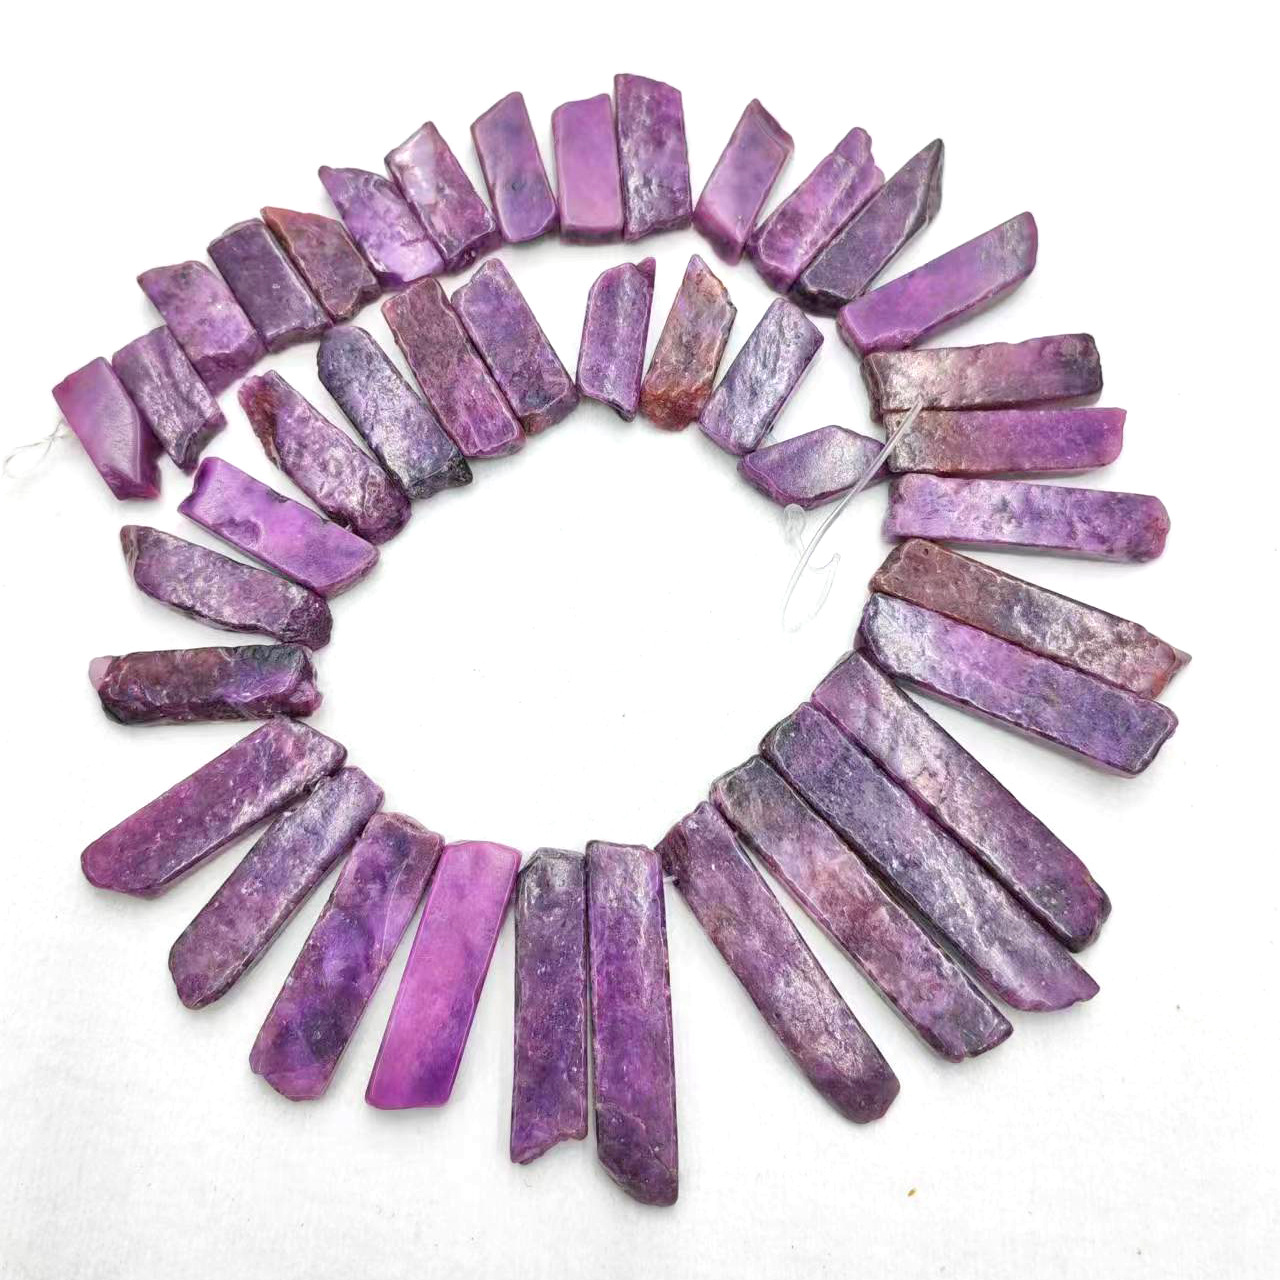 9:Lithium purple stone